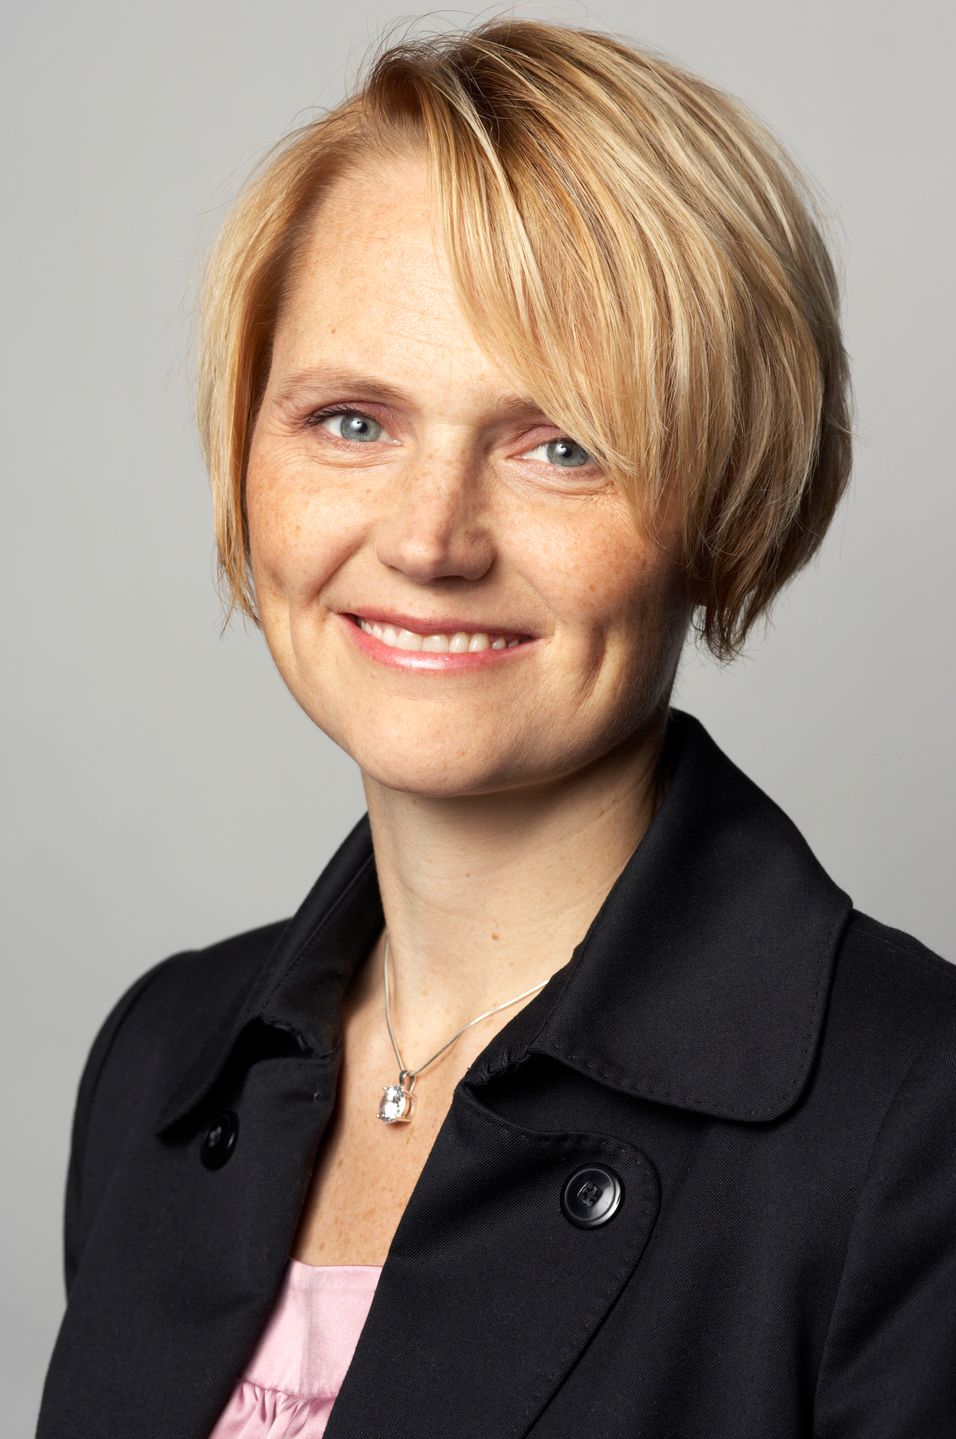  Sveriges IT-minister Anna Karin Hatt har f&amp;aring;tt ytterligere 600 nye millioner for &amp;aring; styrke svensk infrastruktur.&amp;nbsp; 